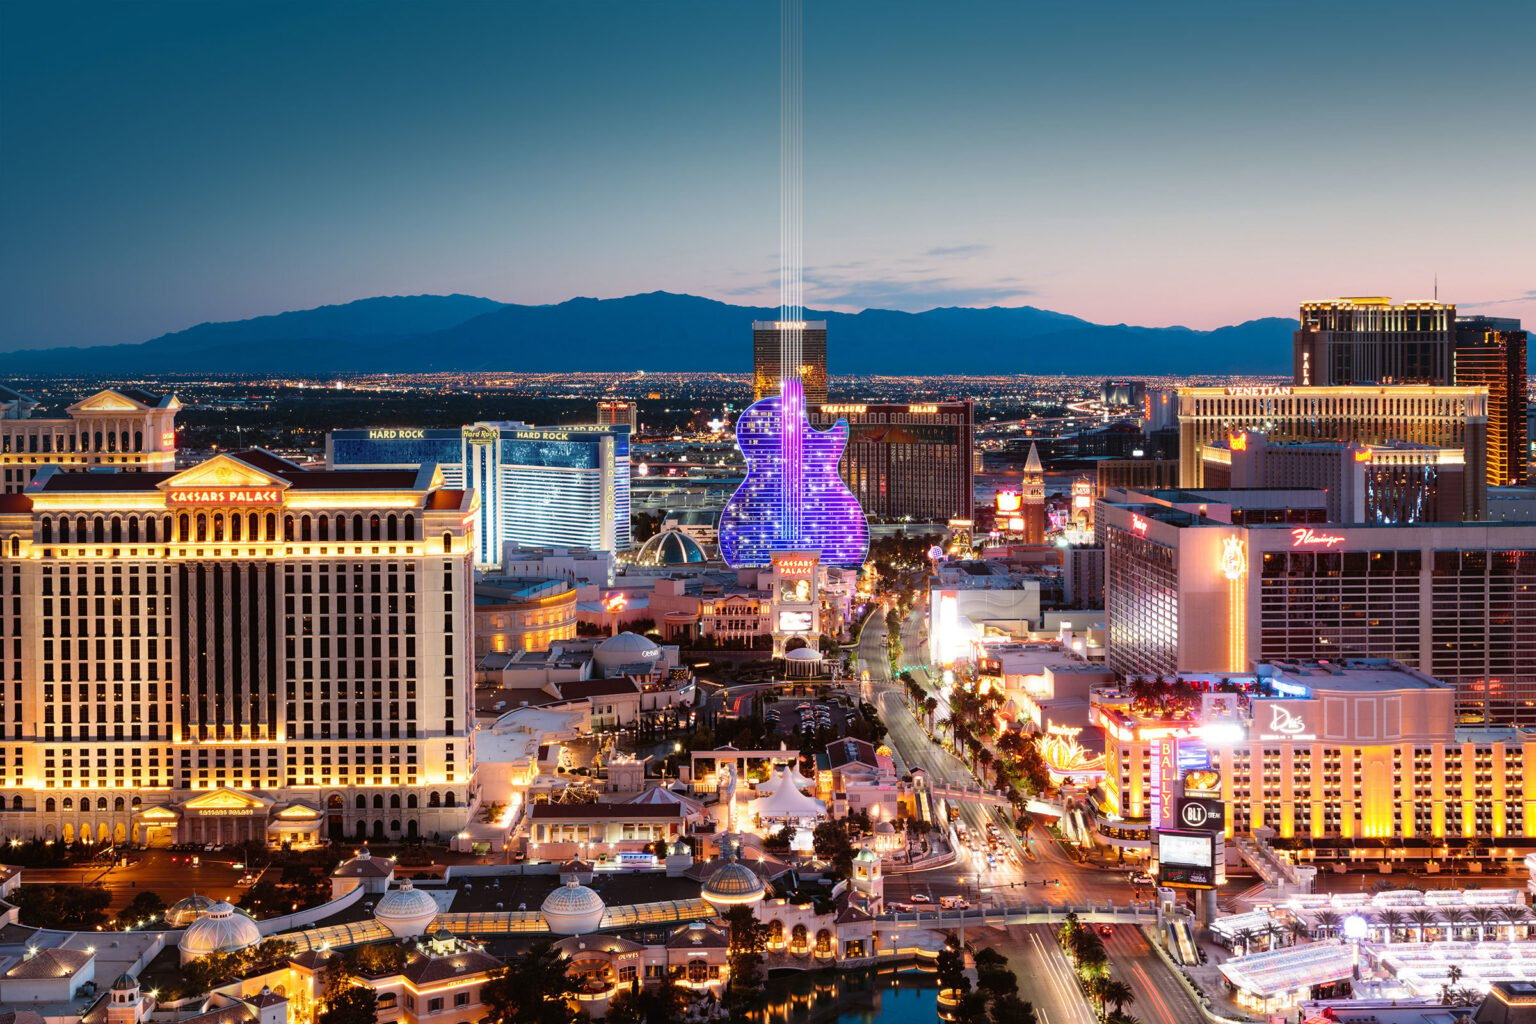 Hard Rock Las Vegas rendering